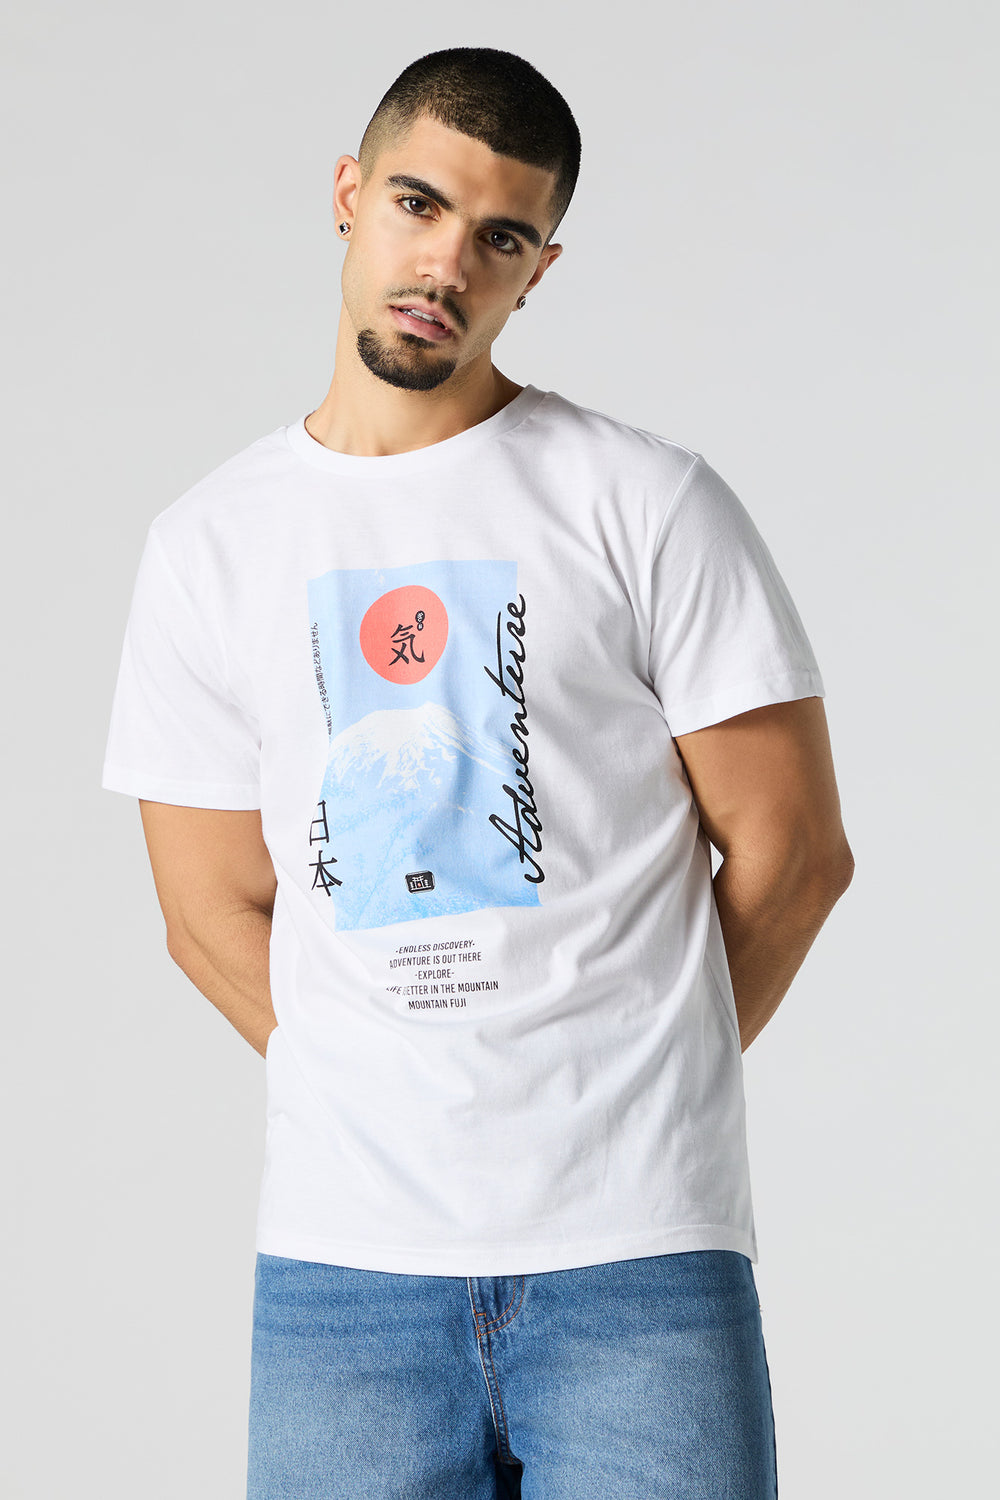 Mount Fuji Graphic T-Shirt Mount Fuji Graphic T-Shirt 2